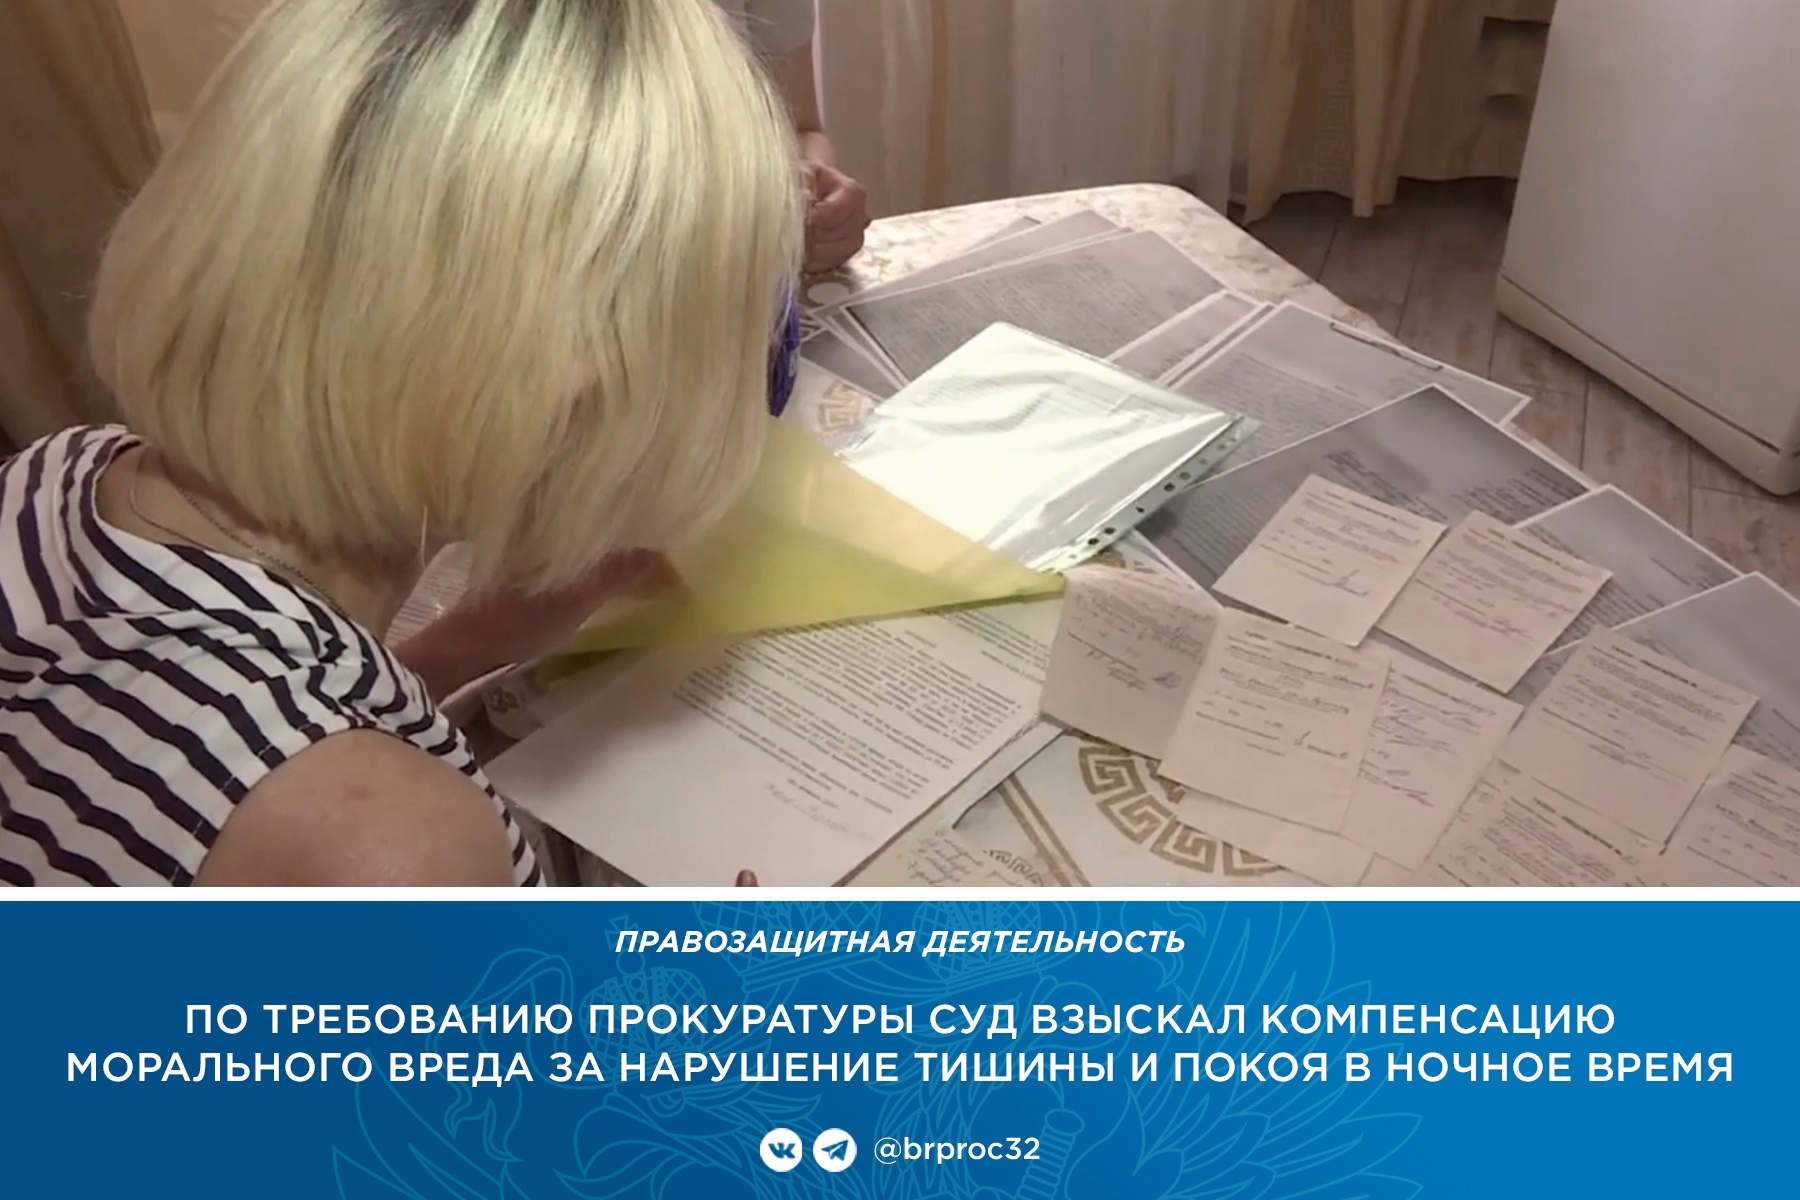 В Брянске любитель громкой ночной музыки выплатил 82-летней соседке 10 тысяч рублей